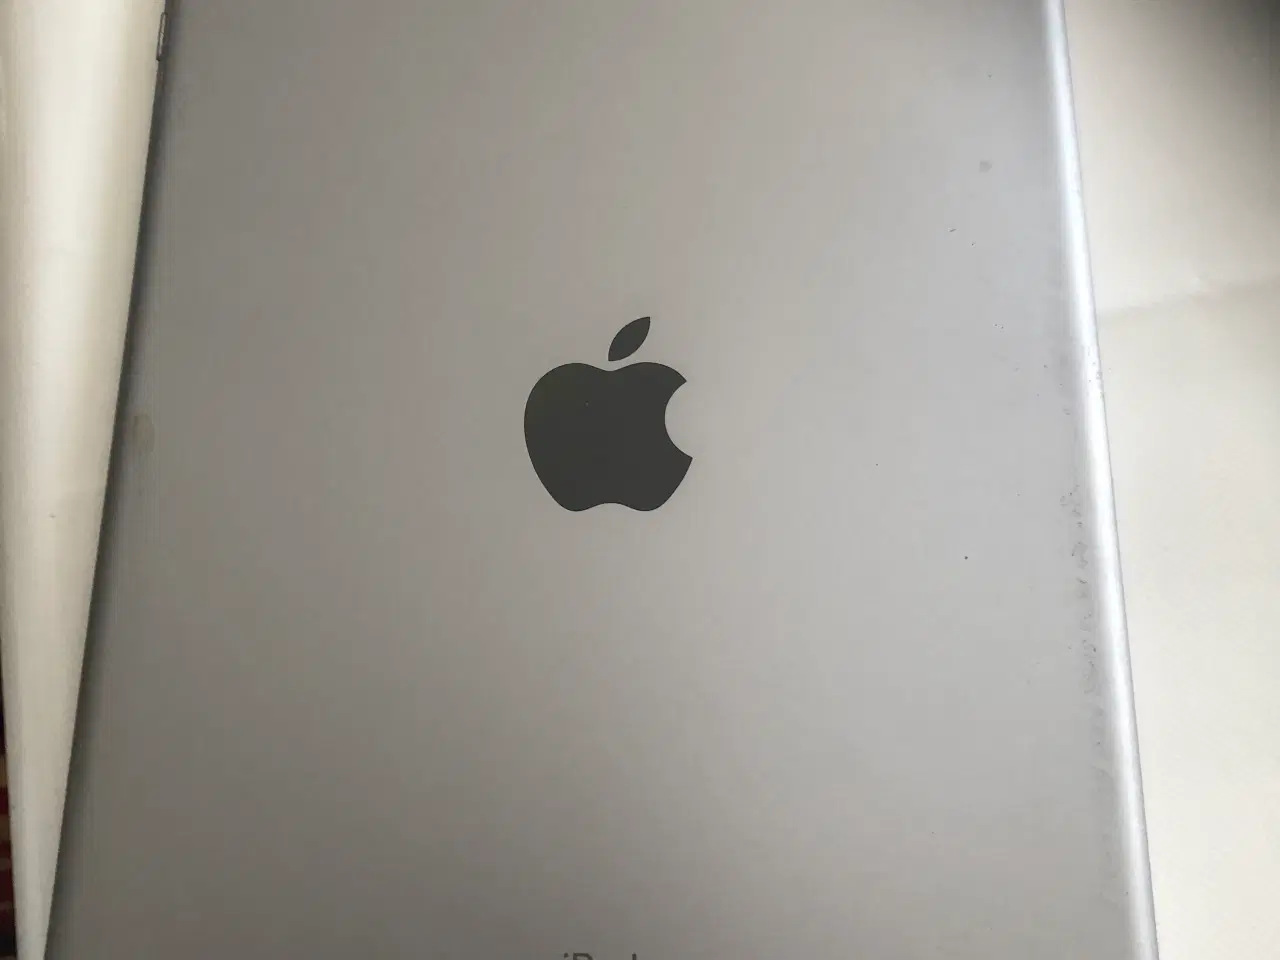 Billede 2 - iPad generation 5 med ødelagt skærm